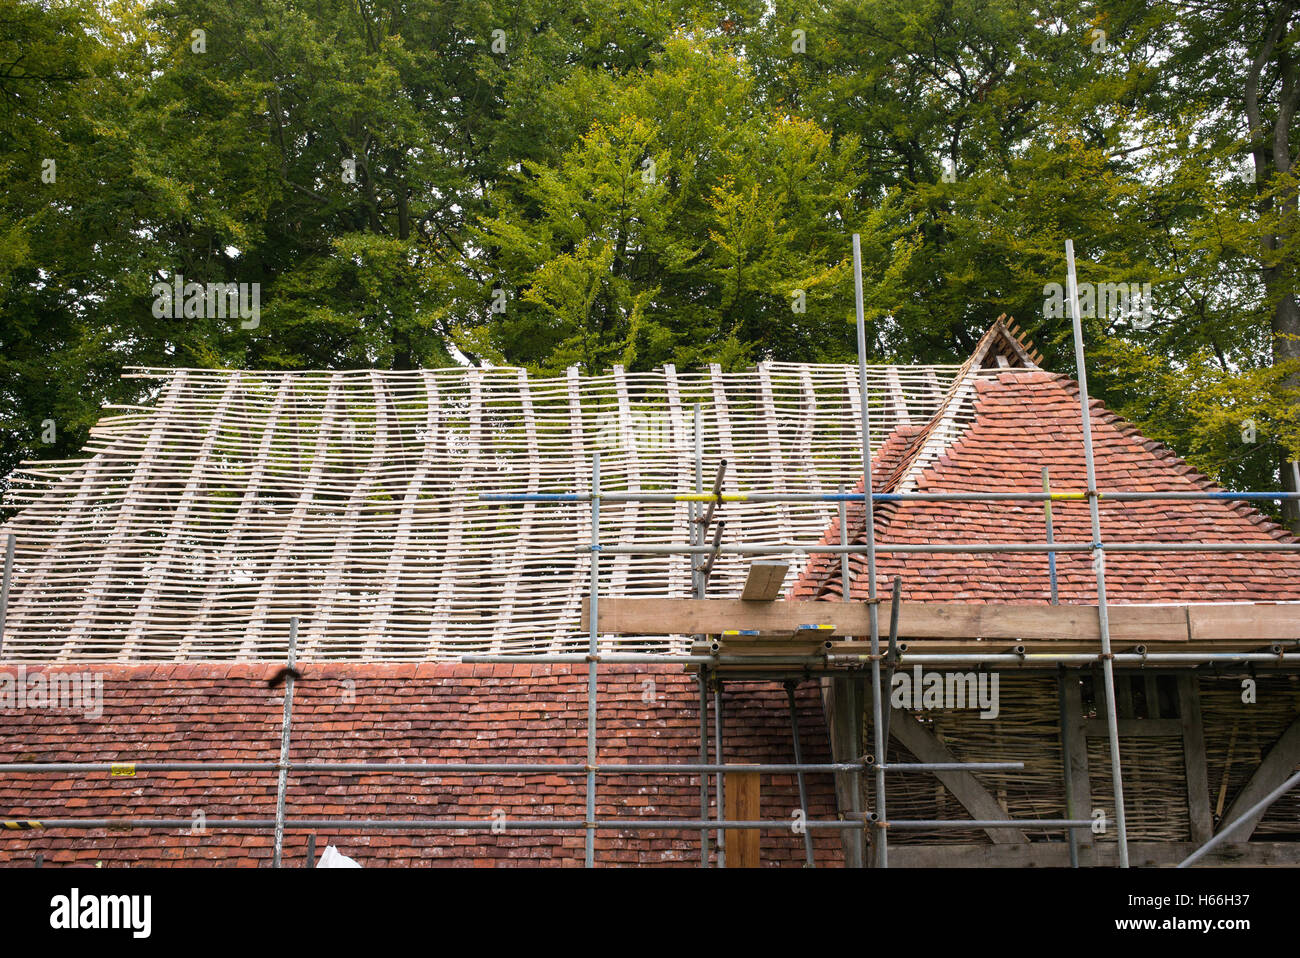 Dachkonstruktion auf einem mittelalterlichen Haus mit Kentish Peg Fliesen Weald und Downland Freilichtmuseum, Singleton, Sussex, England Stockfoto